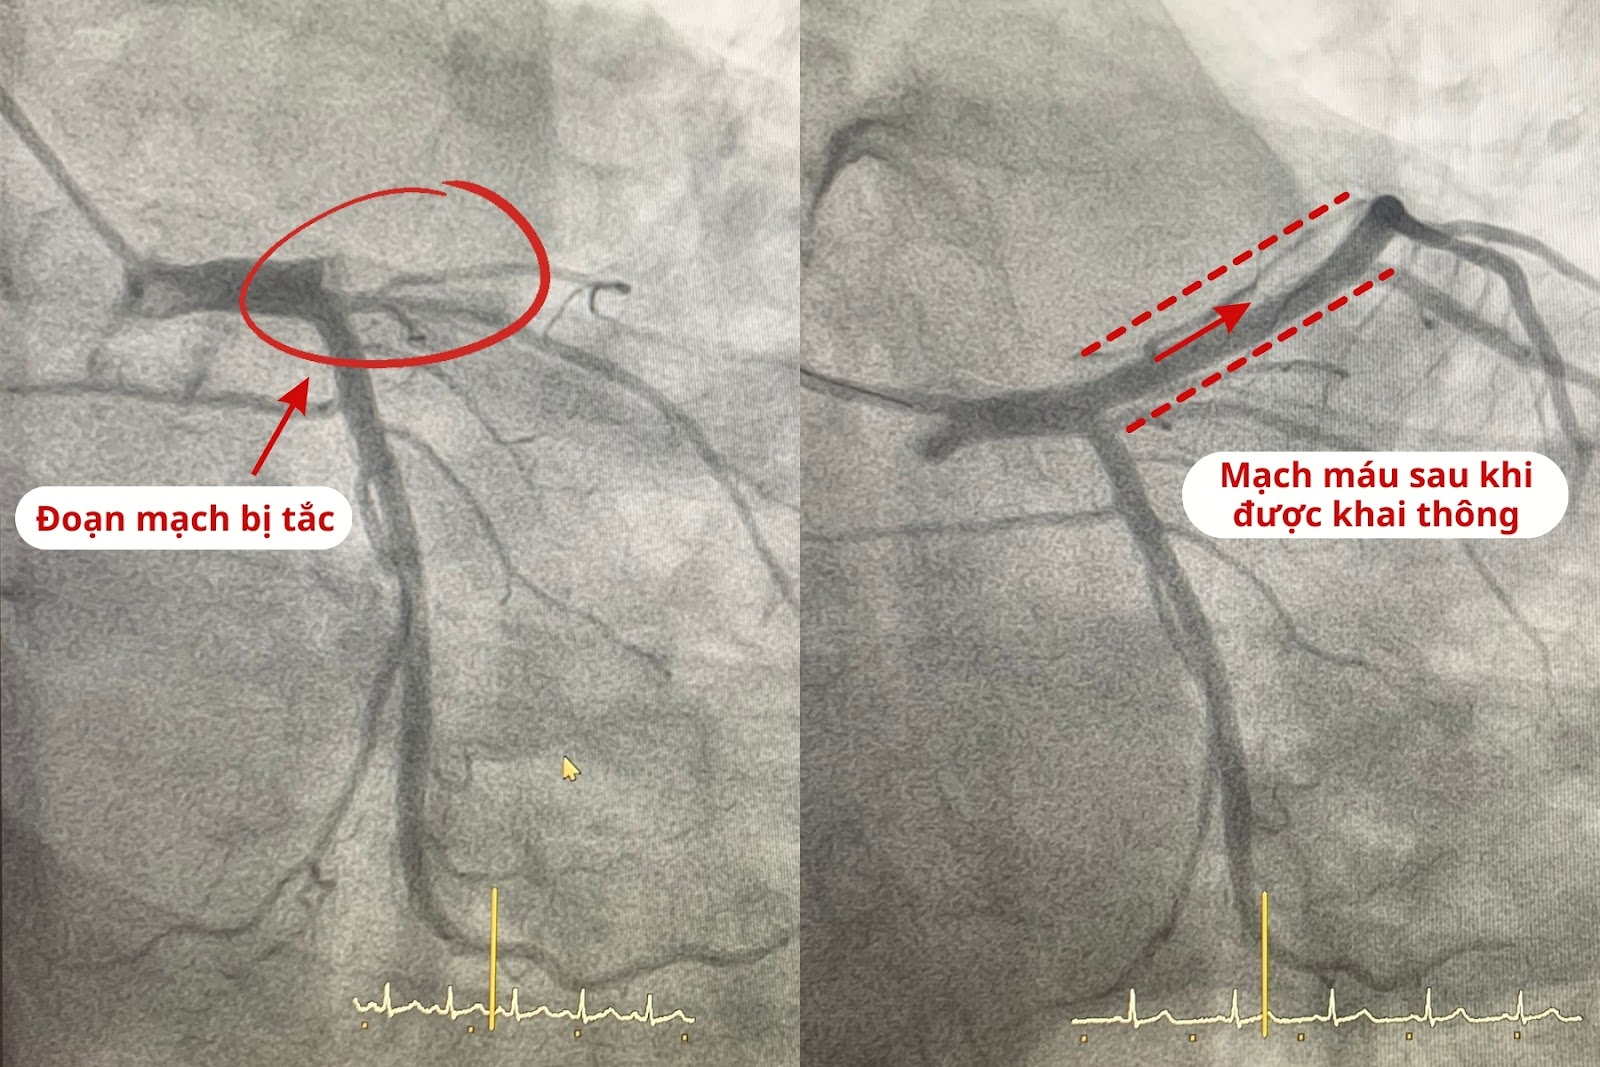 Hình ảnh động mạch vành của bệnh nhân trước và sau can thiệp đặt stent